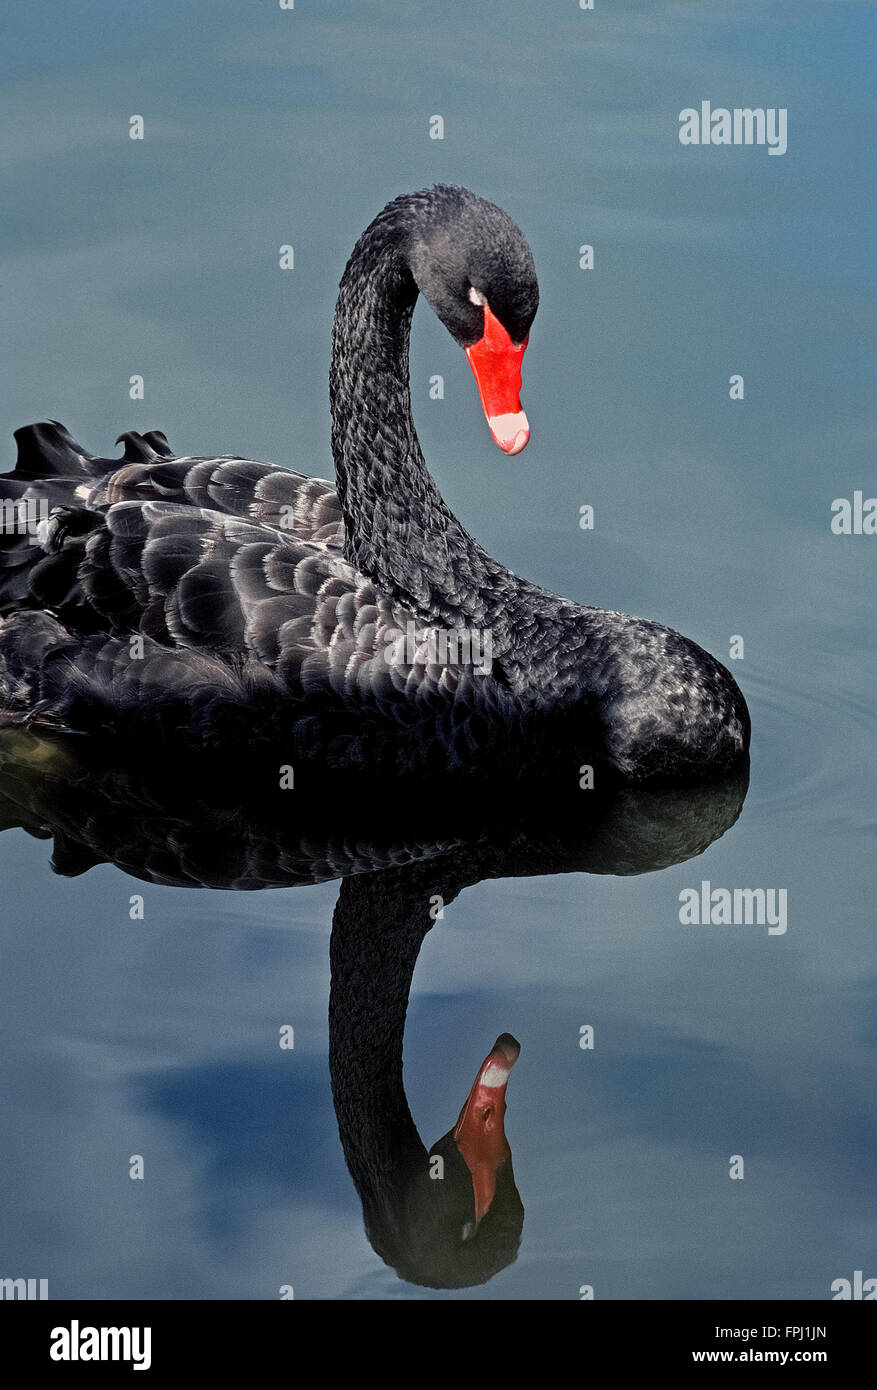 Ein ruhiger See spiegelt das Bild von einem schwarzen Schwan (Cygnus olor), eine exotische Wasservögel gekennzeichnet durch einen roten Schnabel mit einem weißen Band nahe der Spitze. Stockfoto